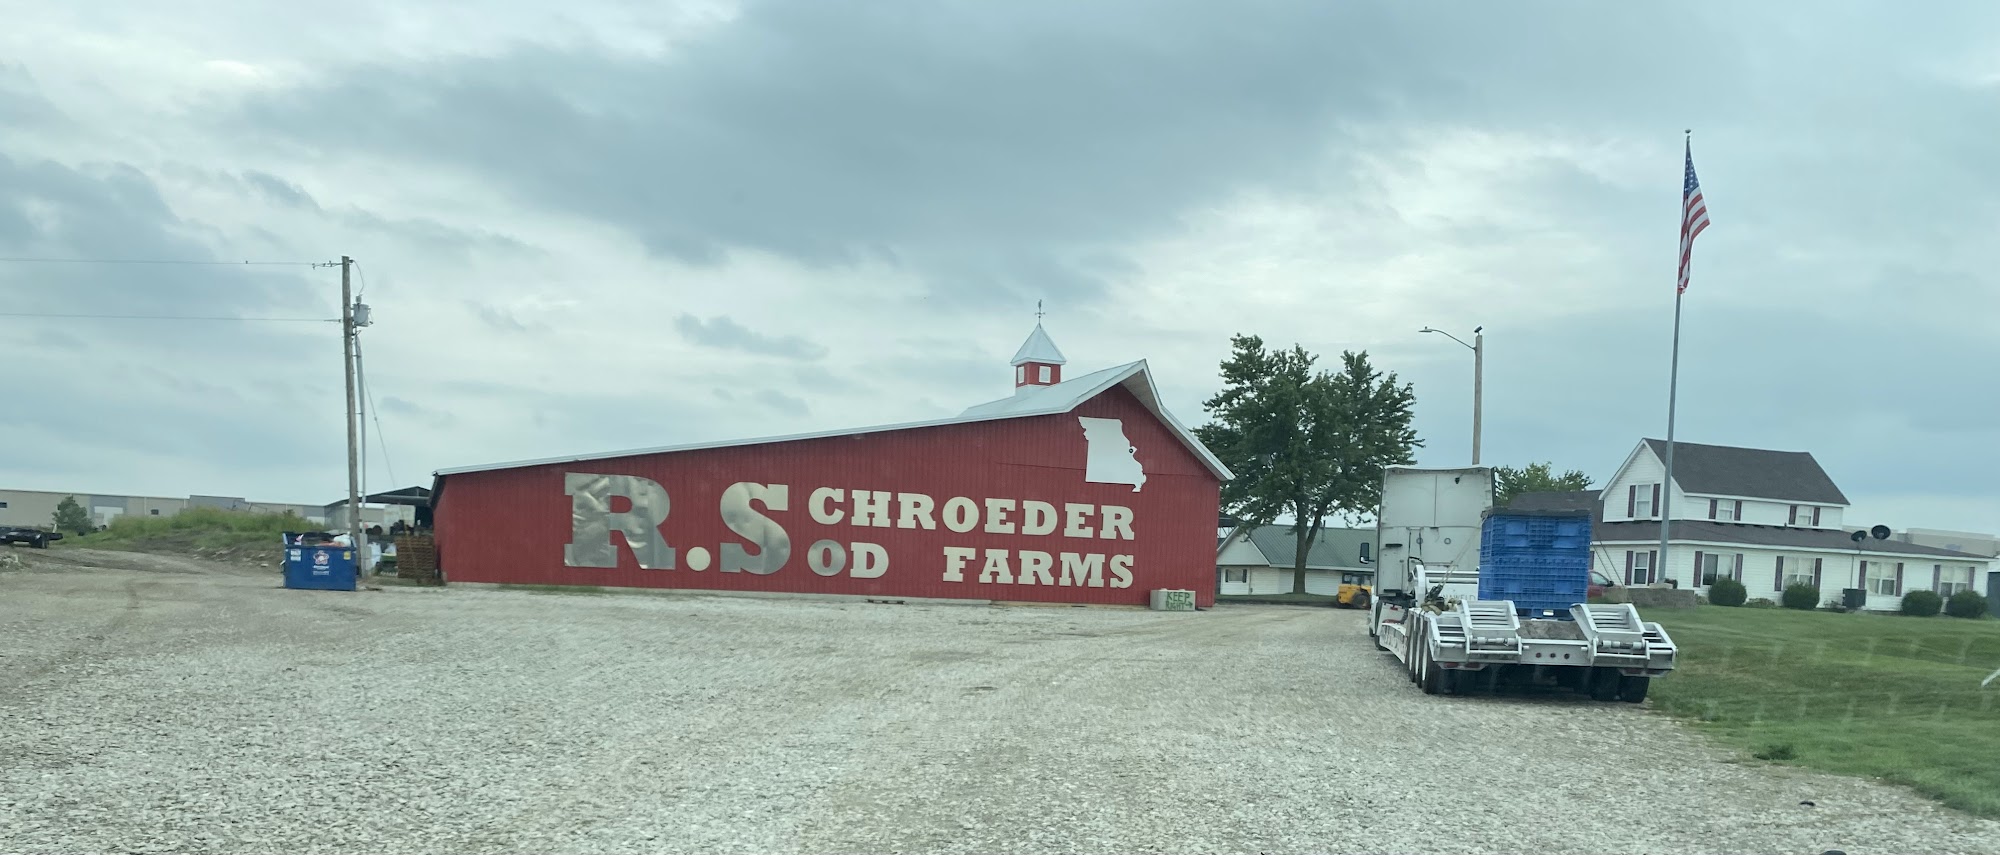 Schroeder Sod Farm